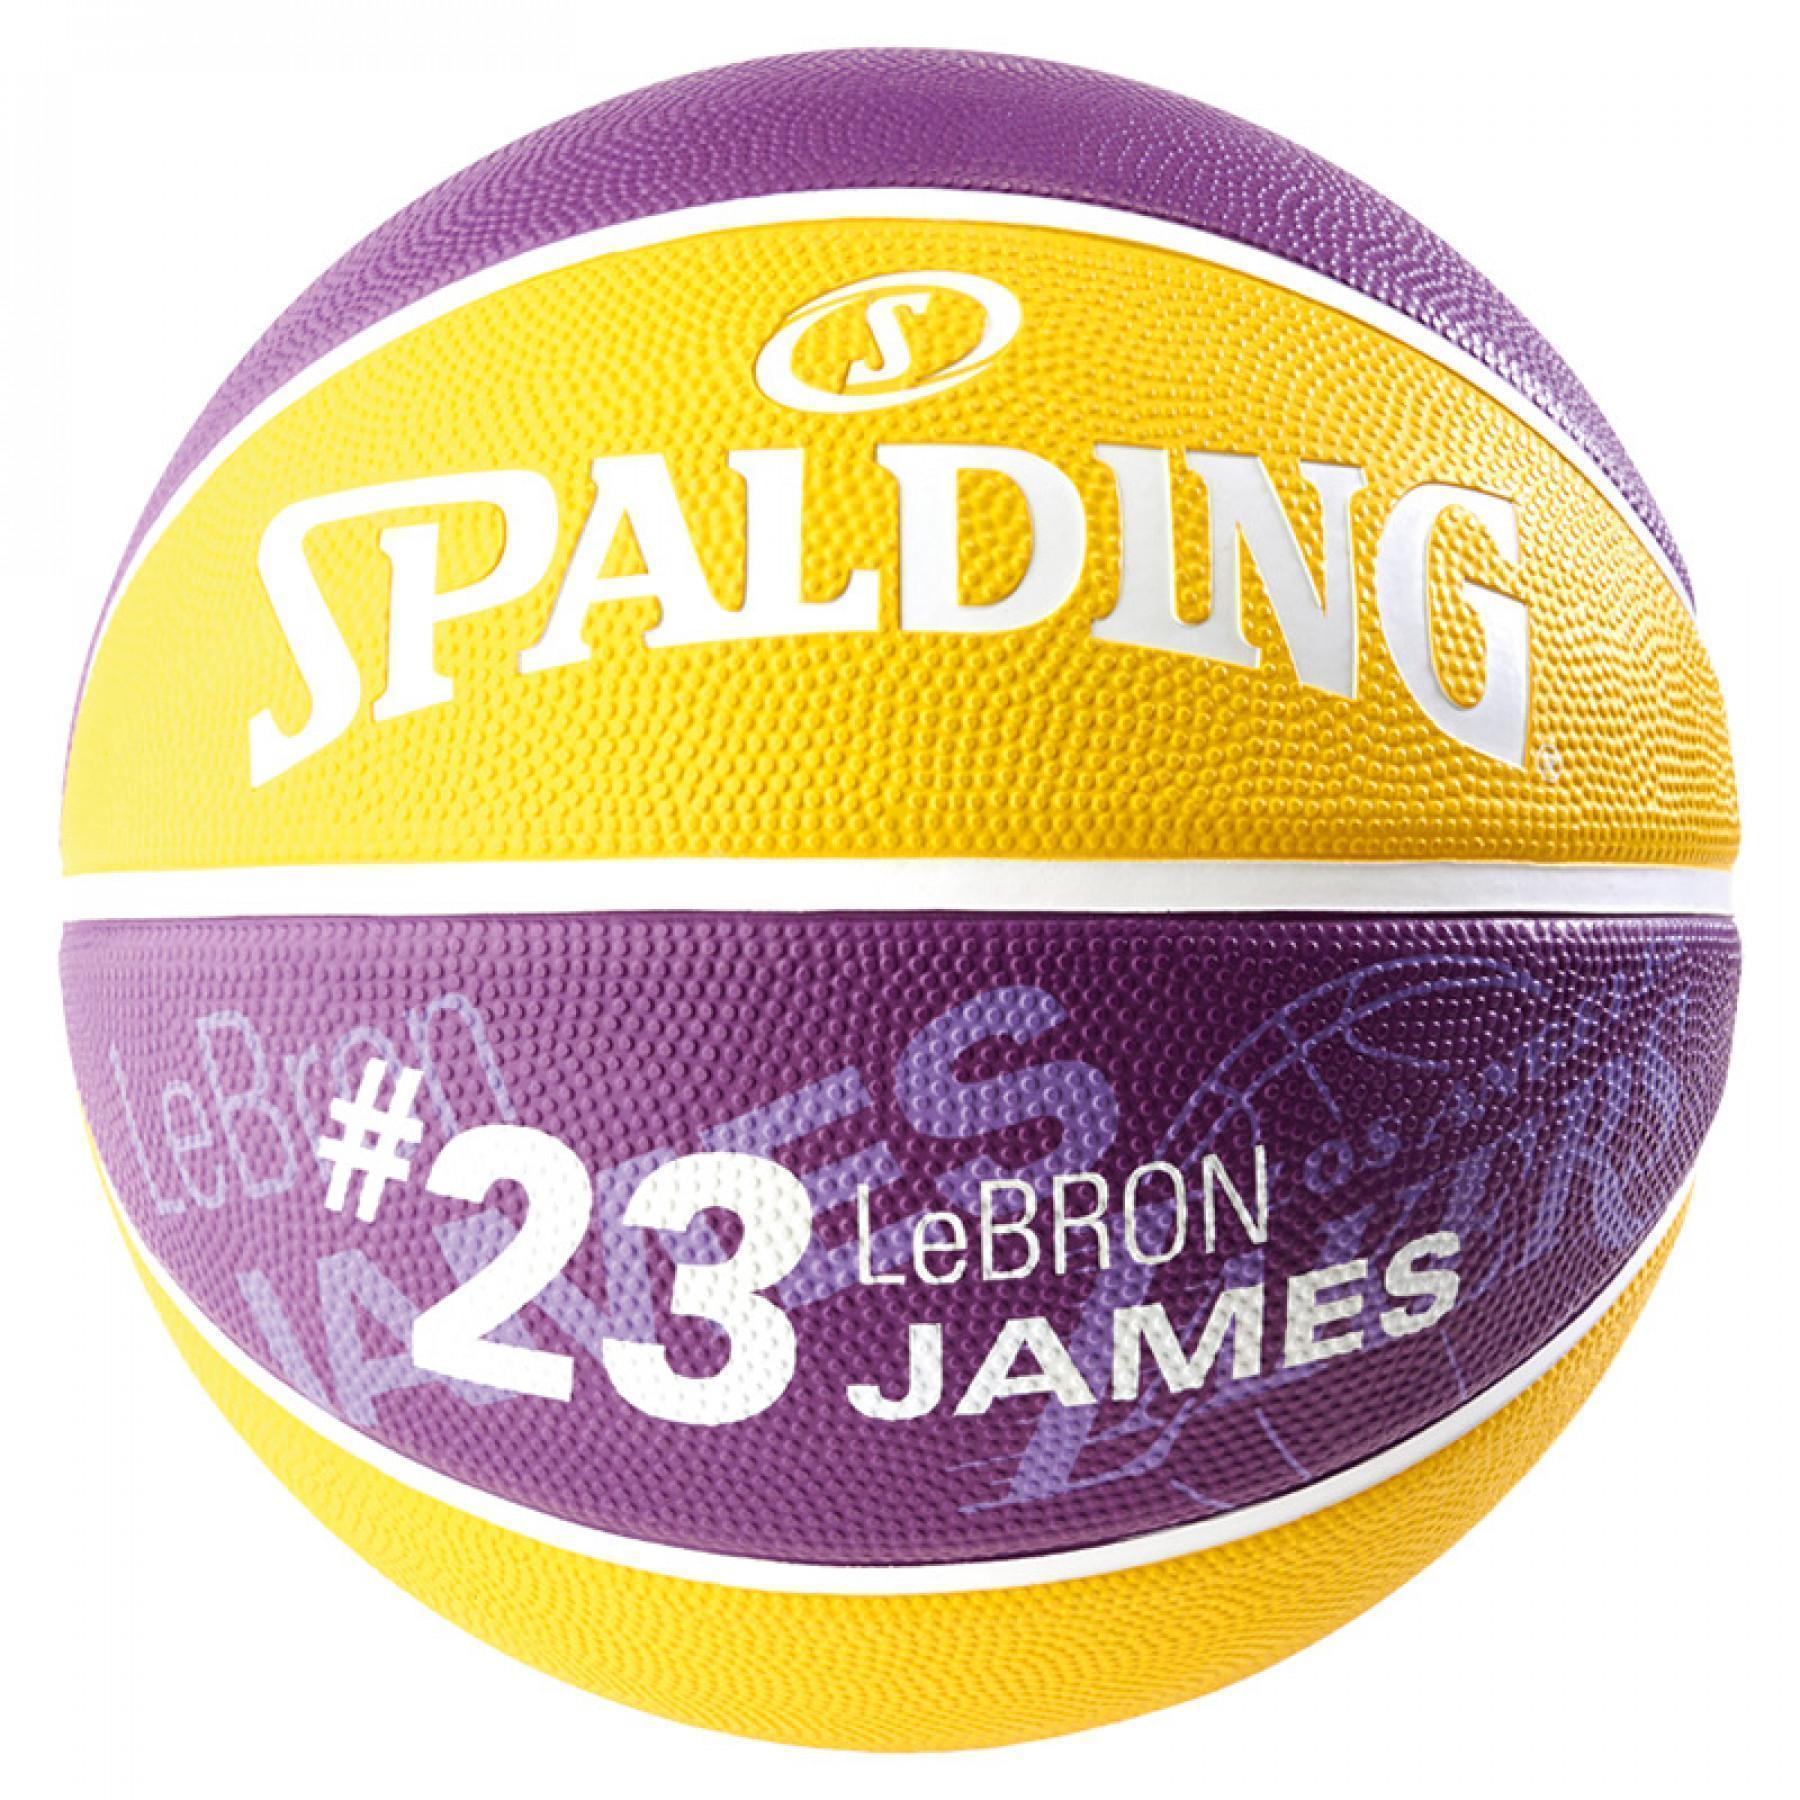 Balon Spalding NBA Player Lebron James (83-863z)